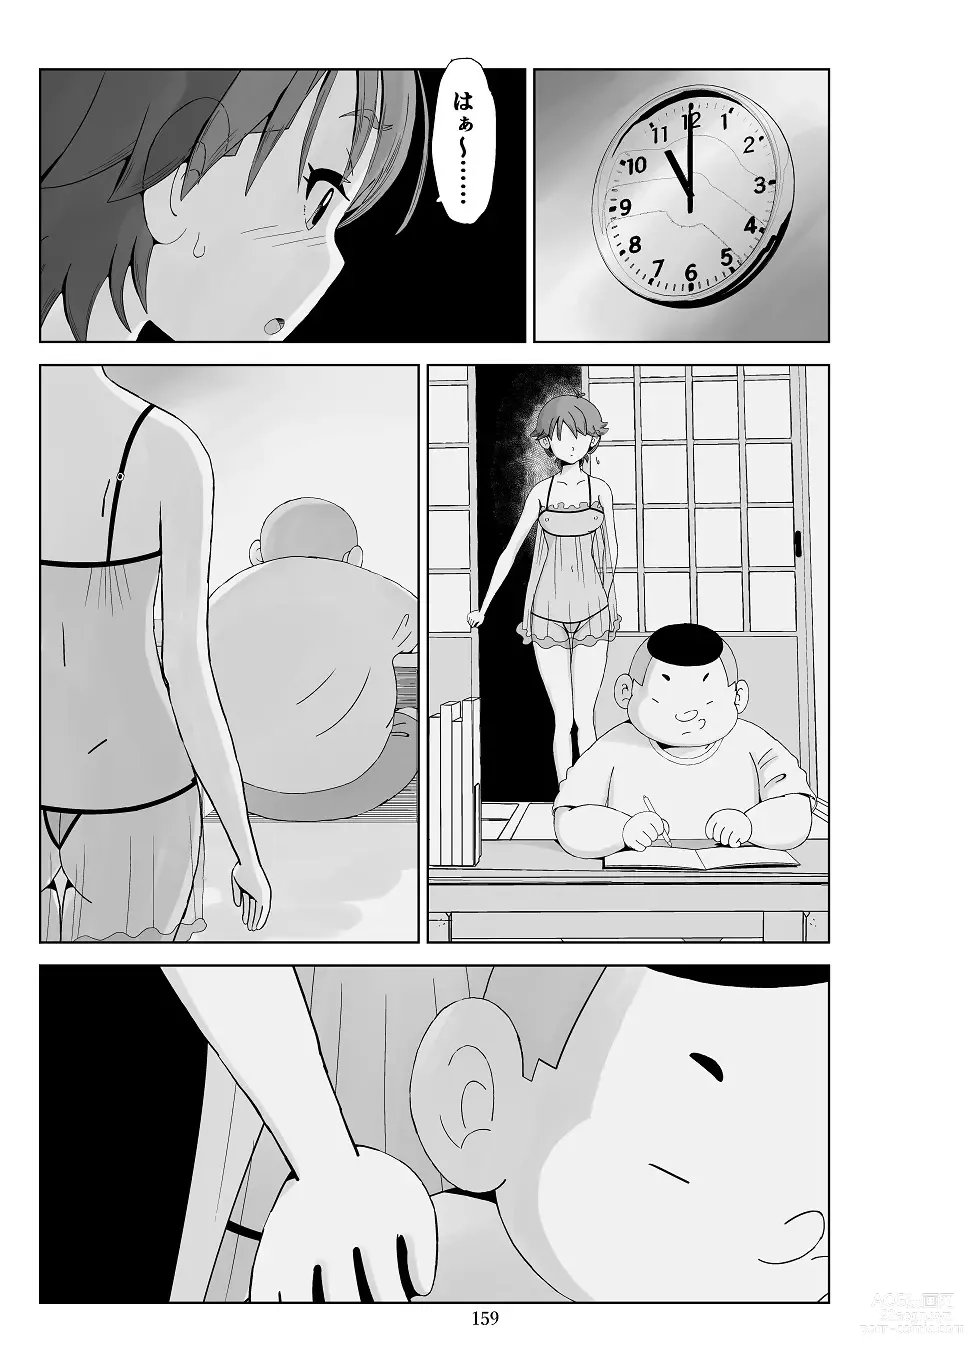 Page 160 of doujinshi Futoshi 3